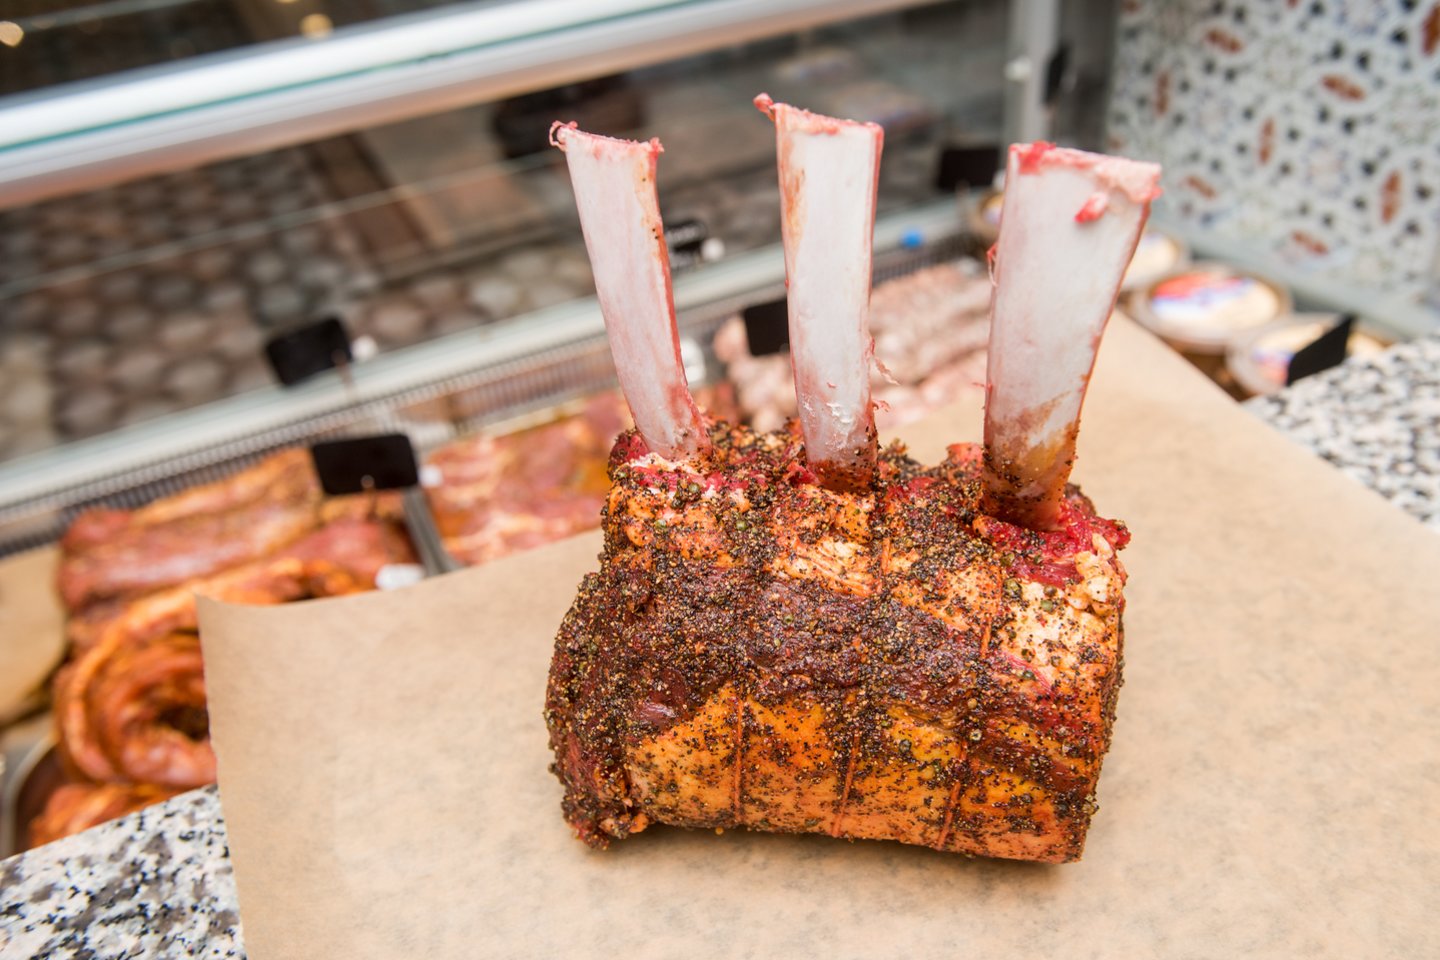 Šonkauliukus kepant ant grotelių aptepti specialiai ruoštu glaistu, kuris apsaugos mėsą nuo išdžiūvimo.<br>D.Umbraso nuotr.